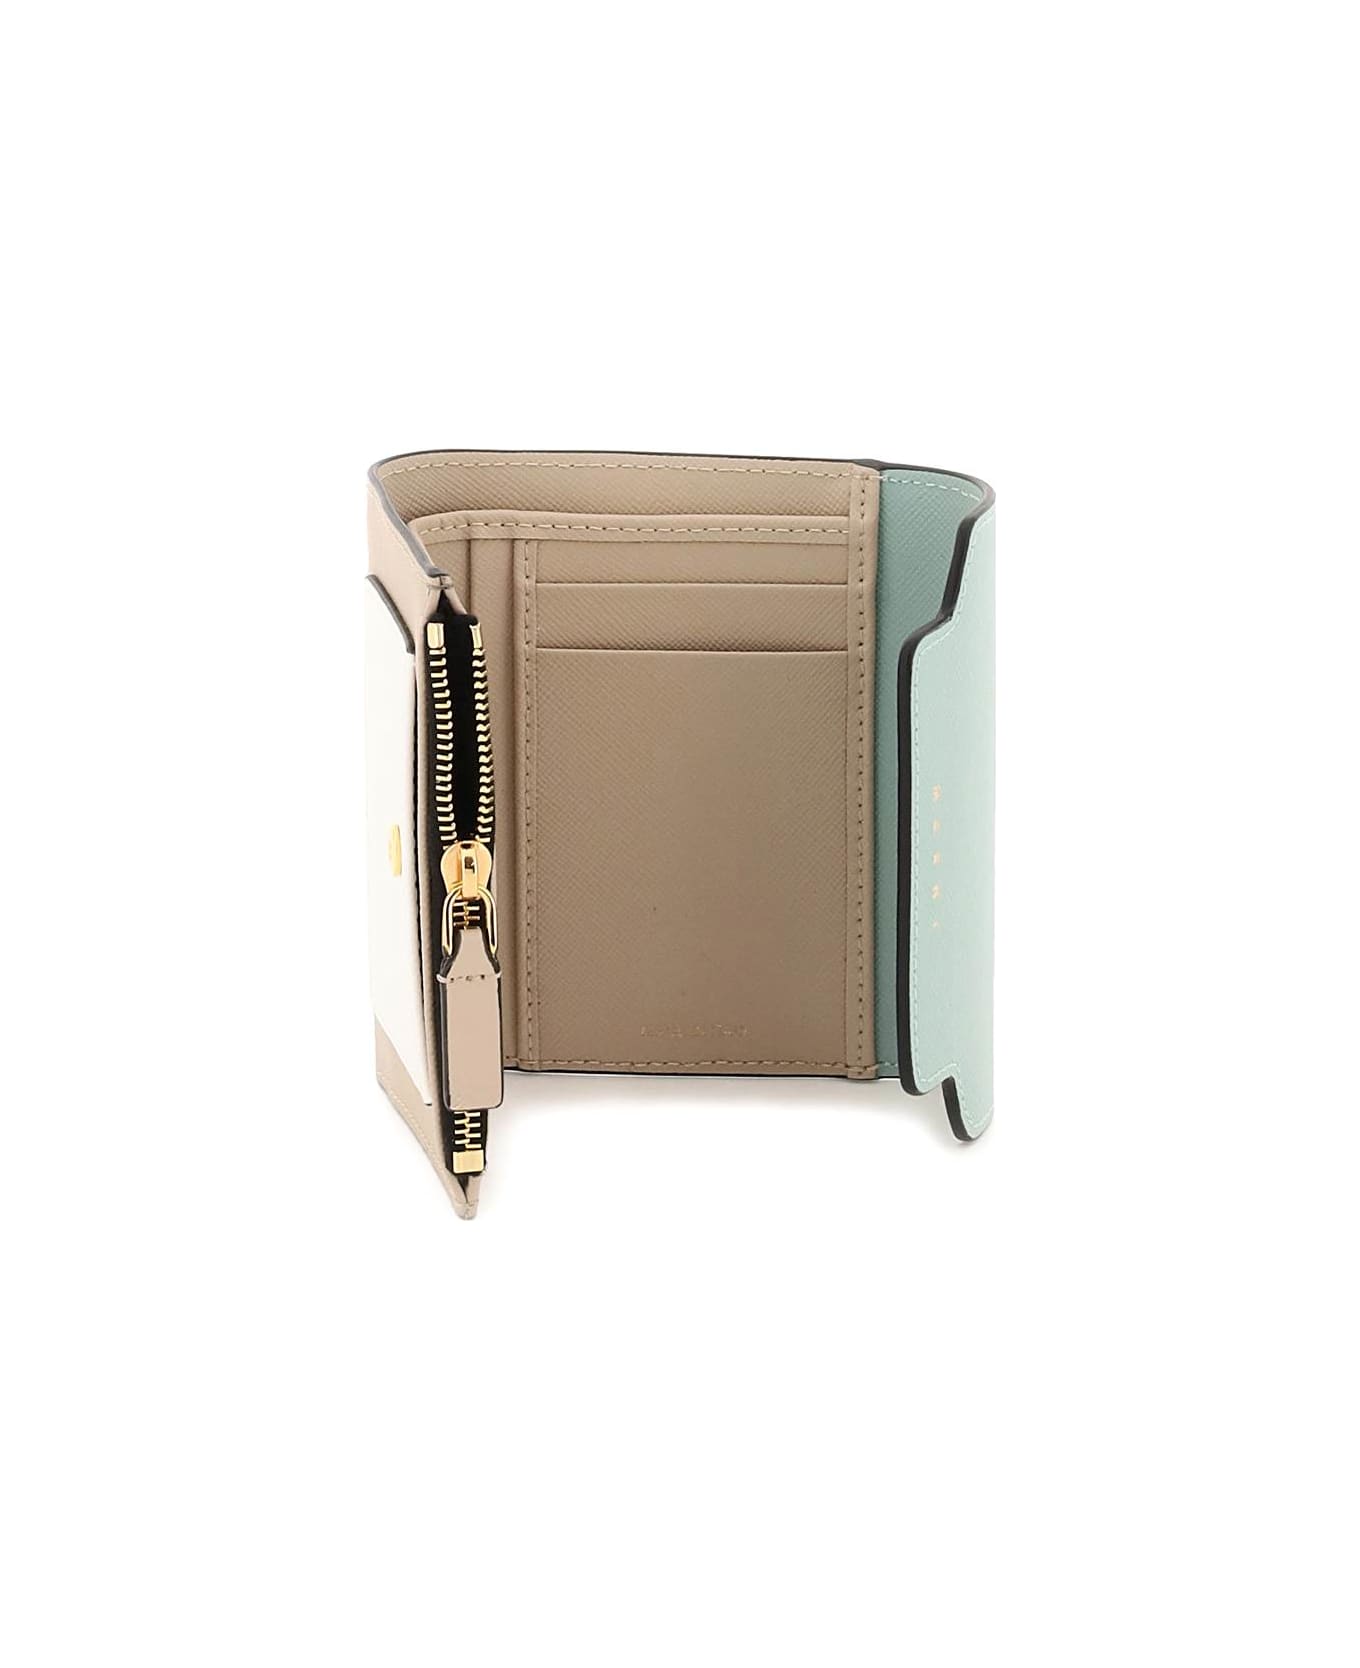 Marni Bi-fold Wallet With Flap - TEA GREEN LIMESTONE LCAMEL (Beige)